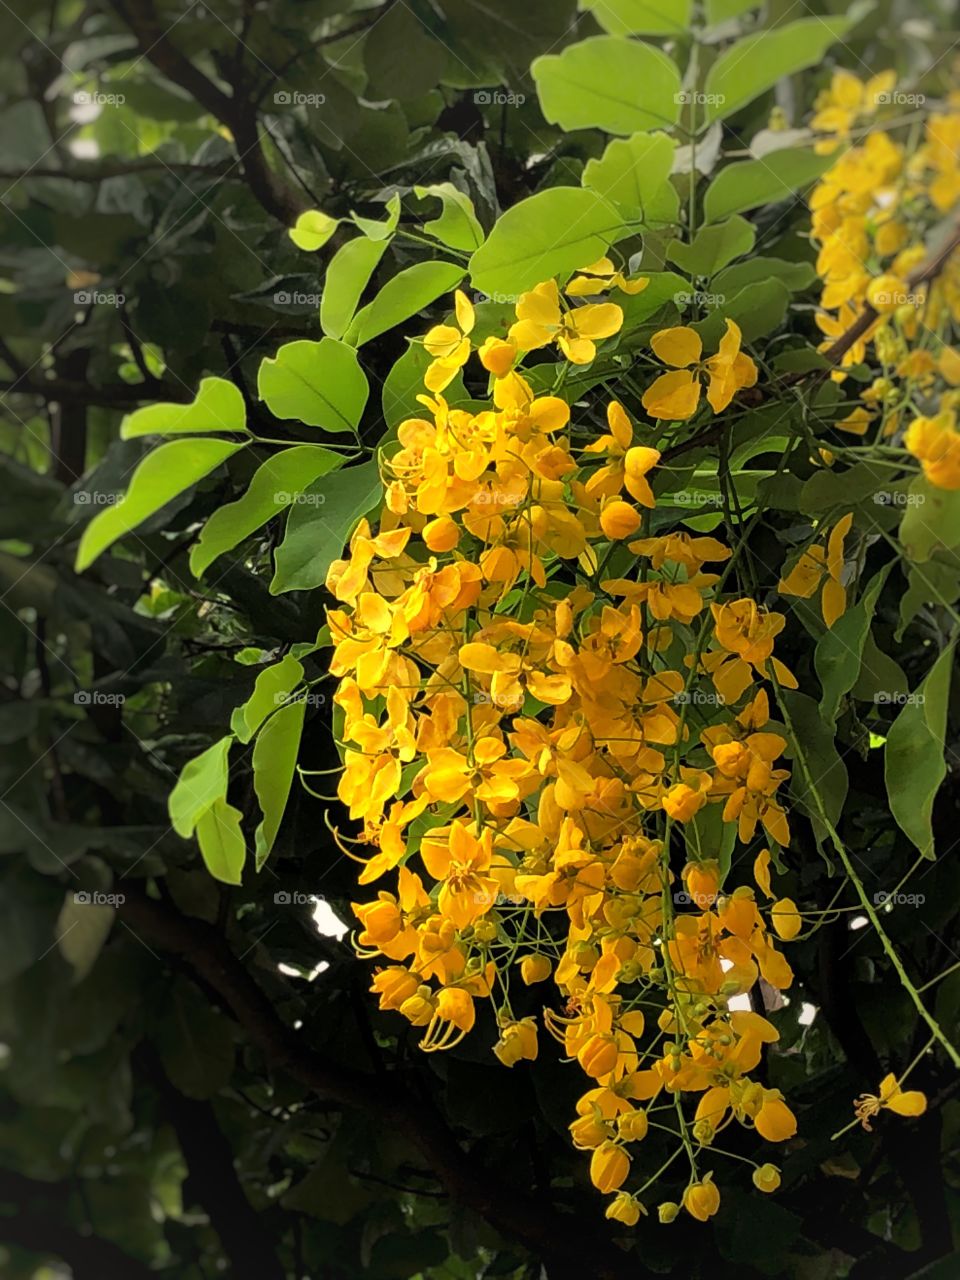 Flame tree yellow flowers, sweet acacia, acacia farnesiana